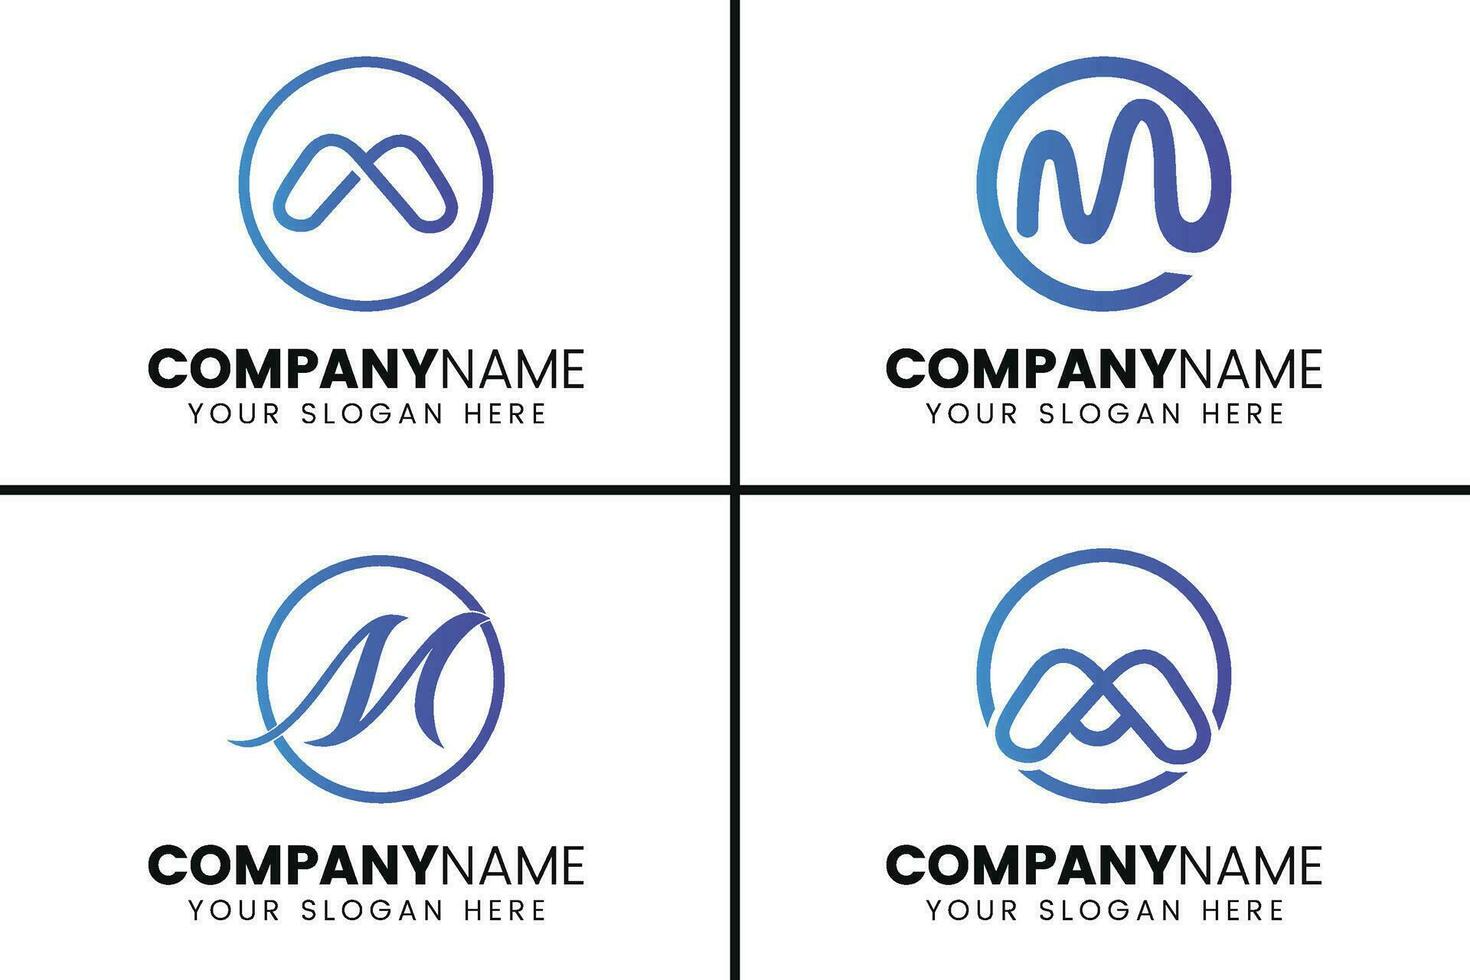 creatief monogram brief m logo ontwerp vector